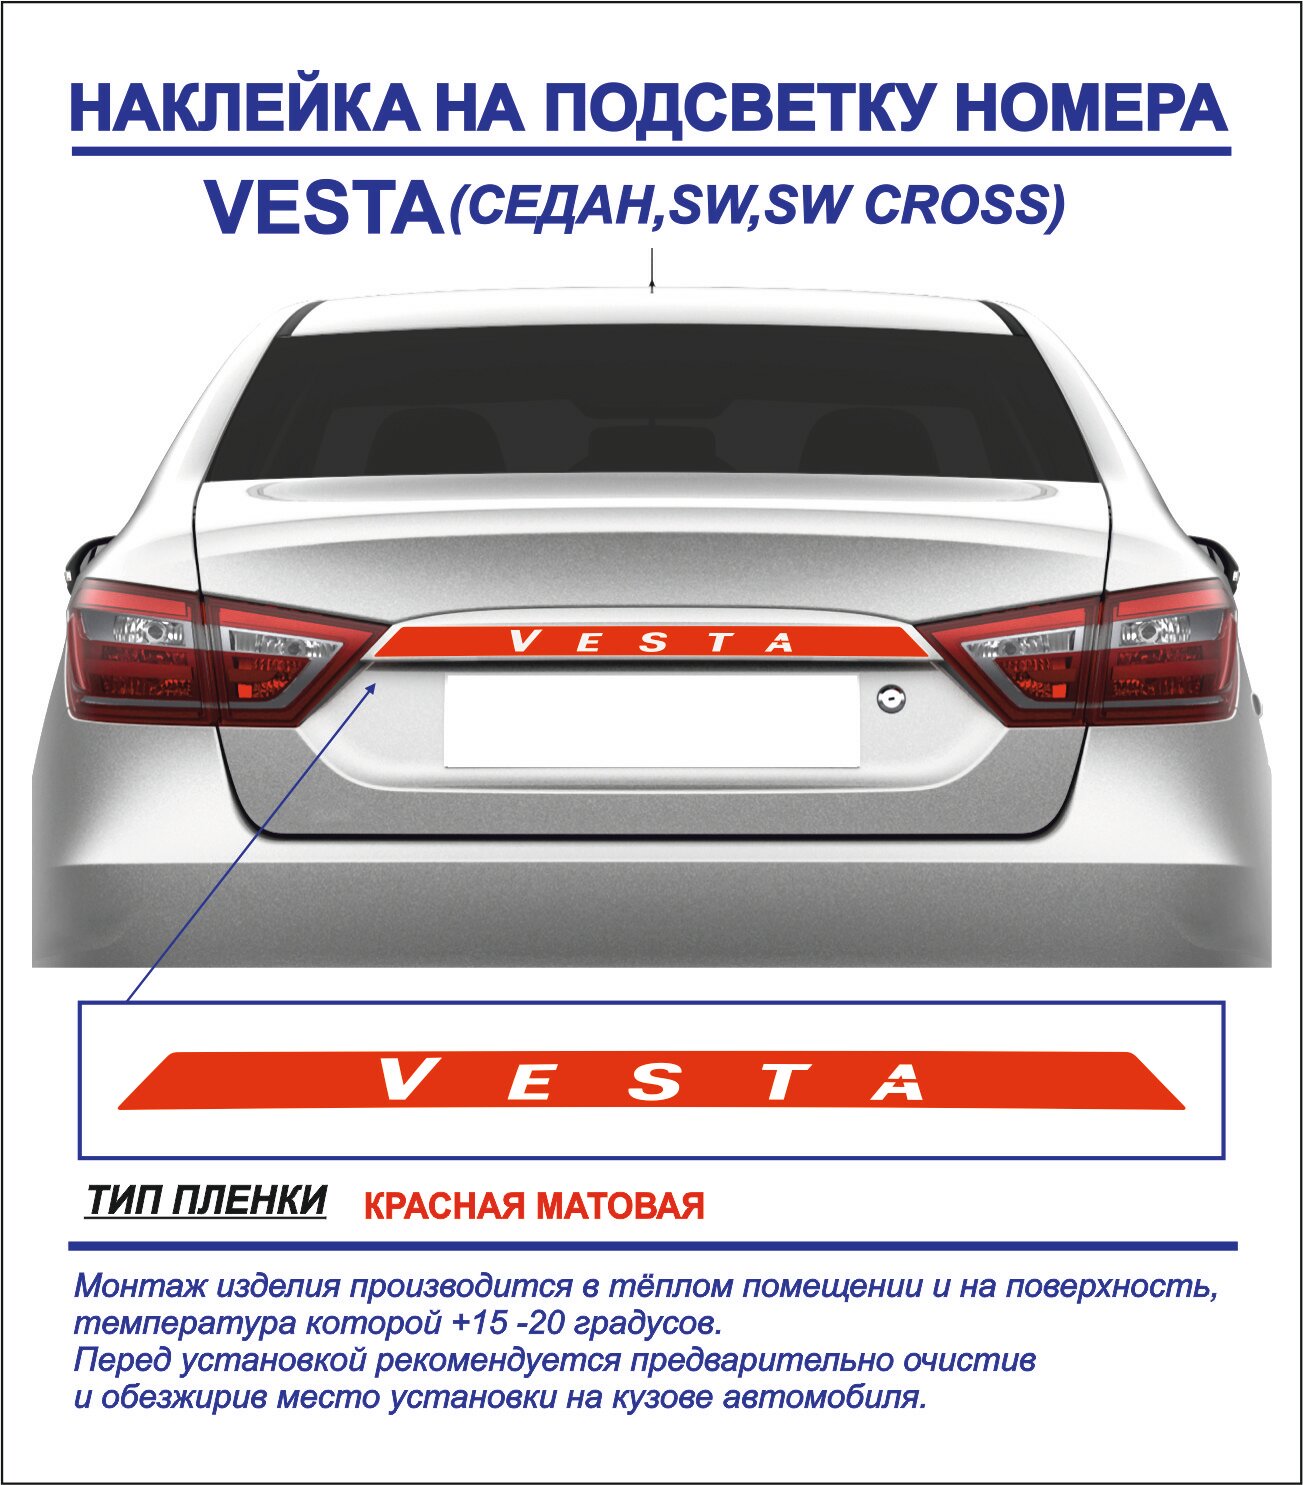 Наклейка, тюнинг на подсветку номера Lada Vesta седан, sw, sw cross (красная, матовая) 1шт.